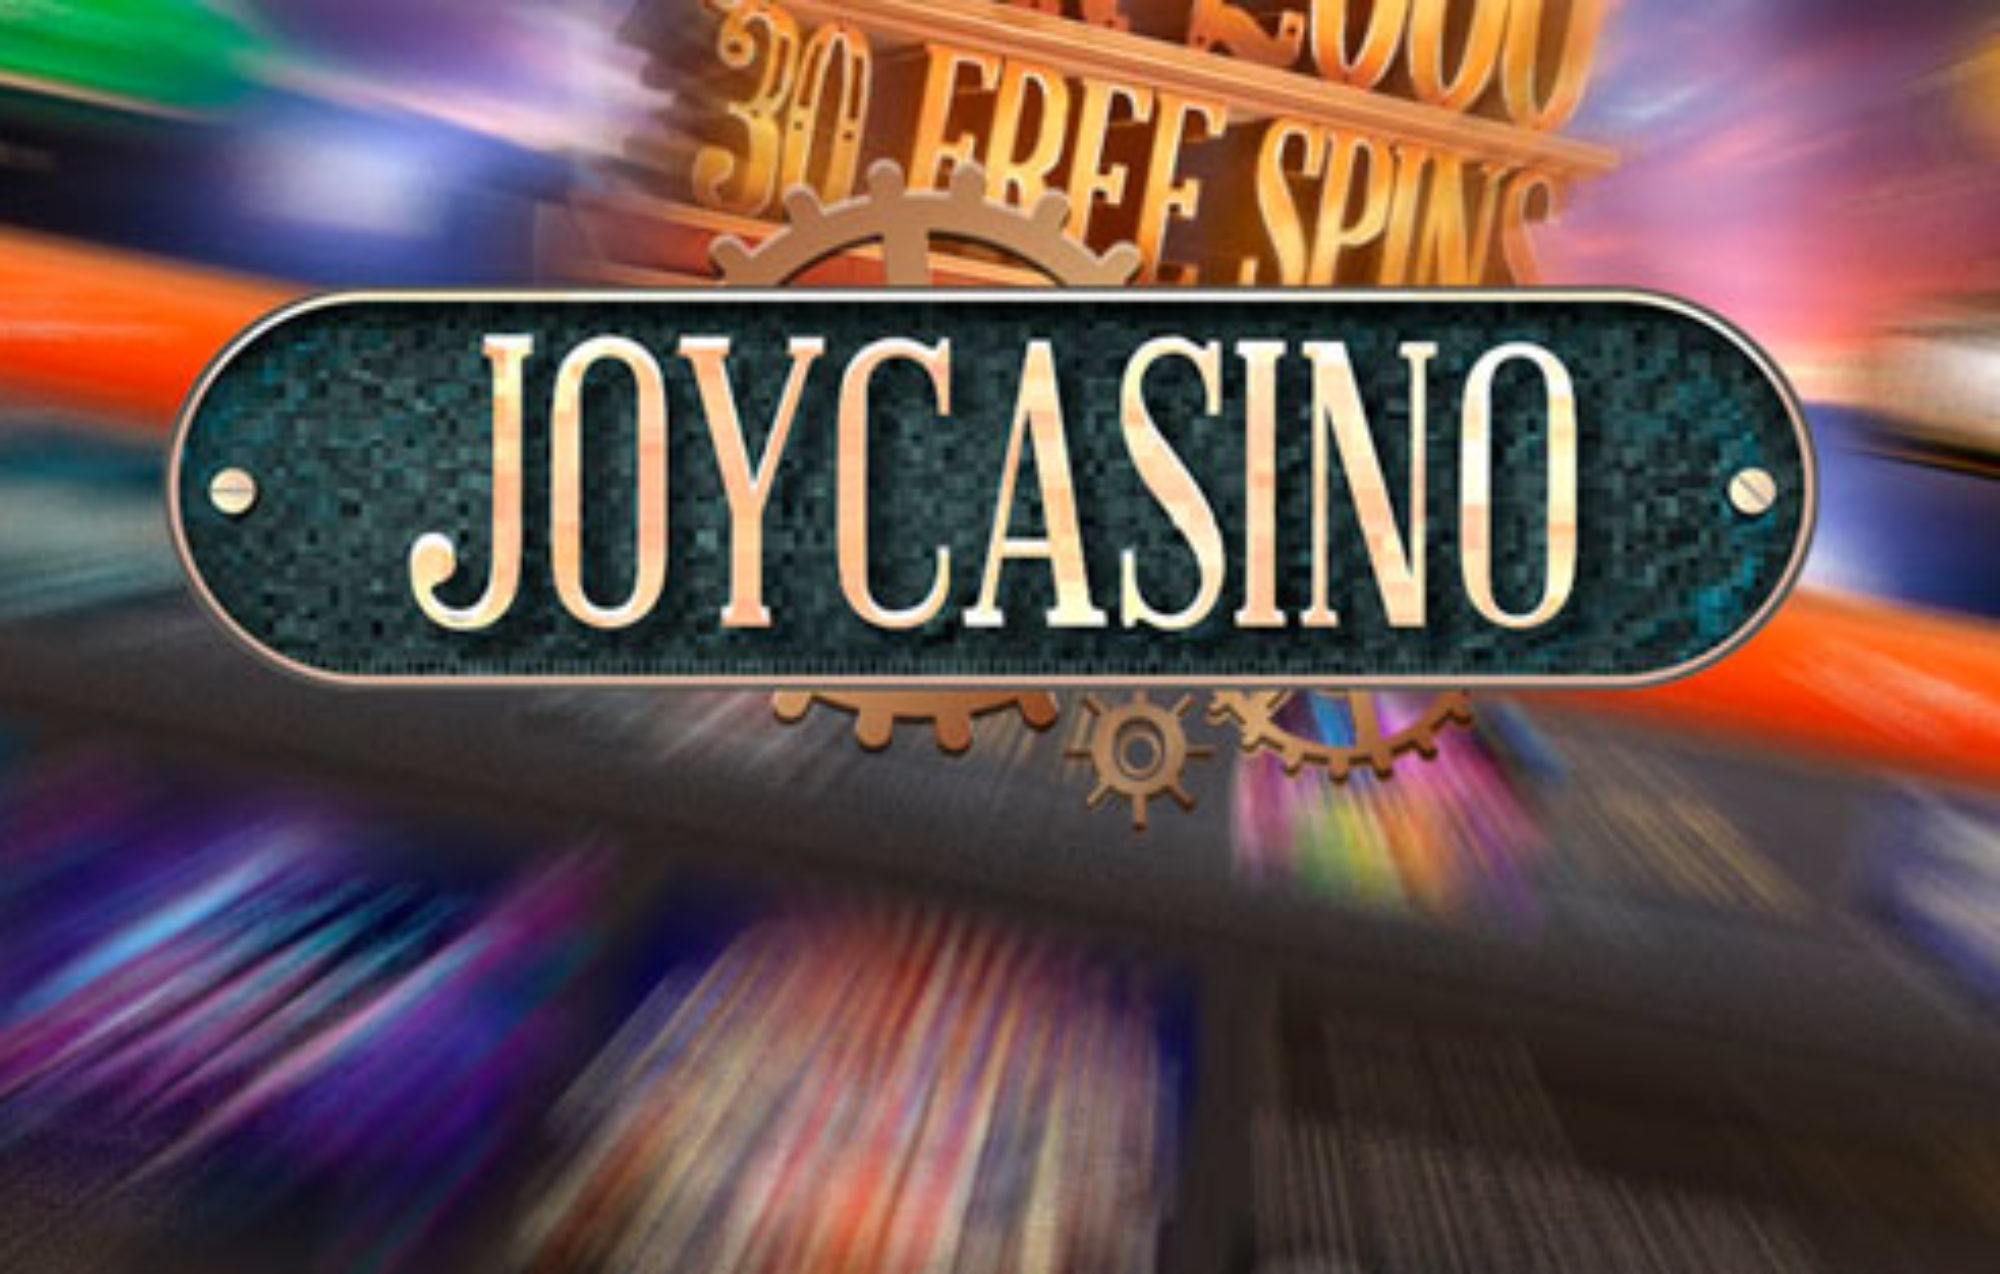 Джойказино бездепозитный бонус joycasino official game